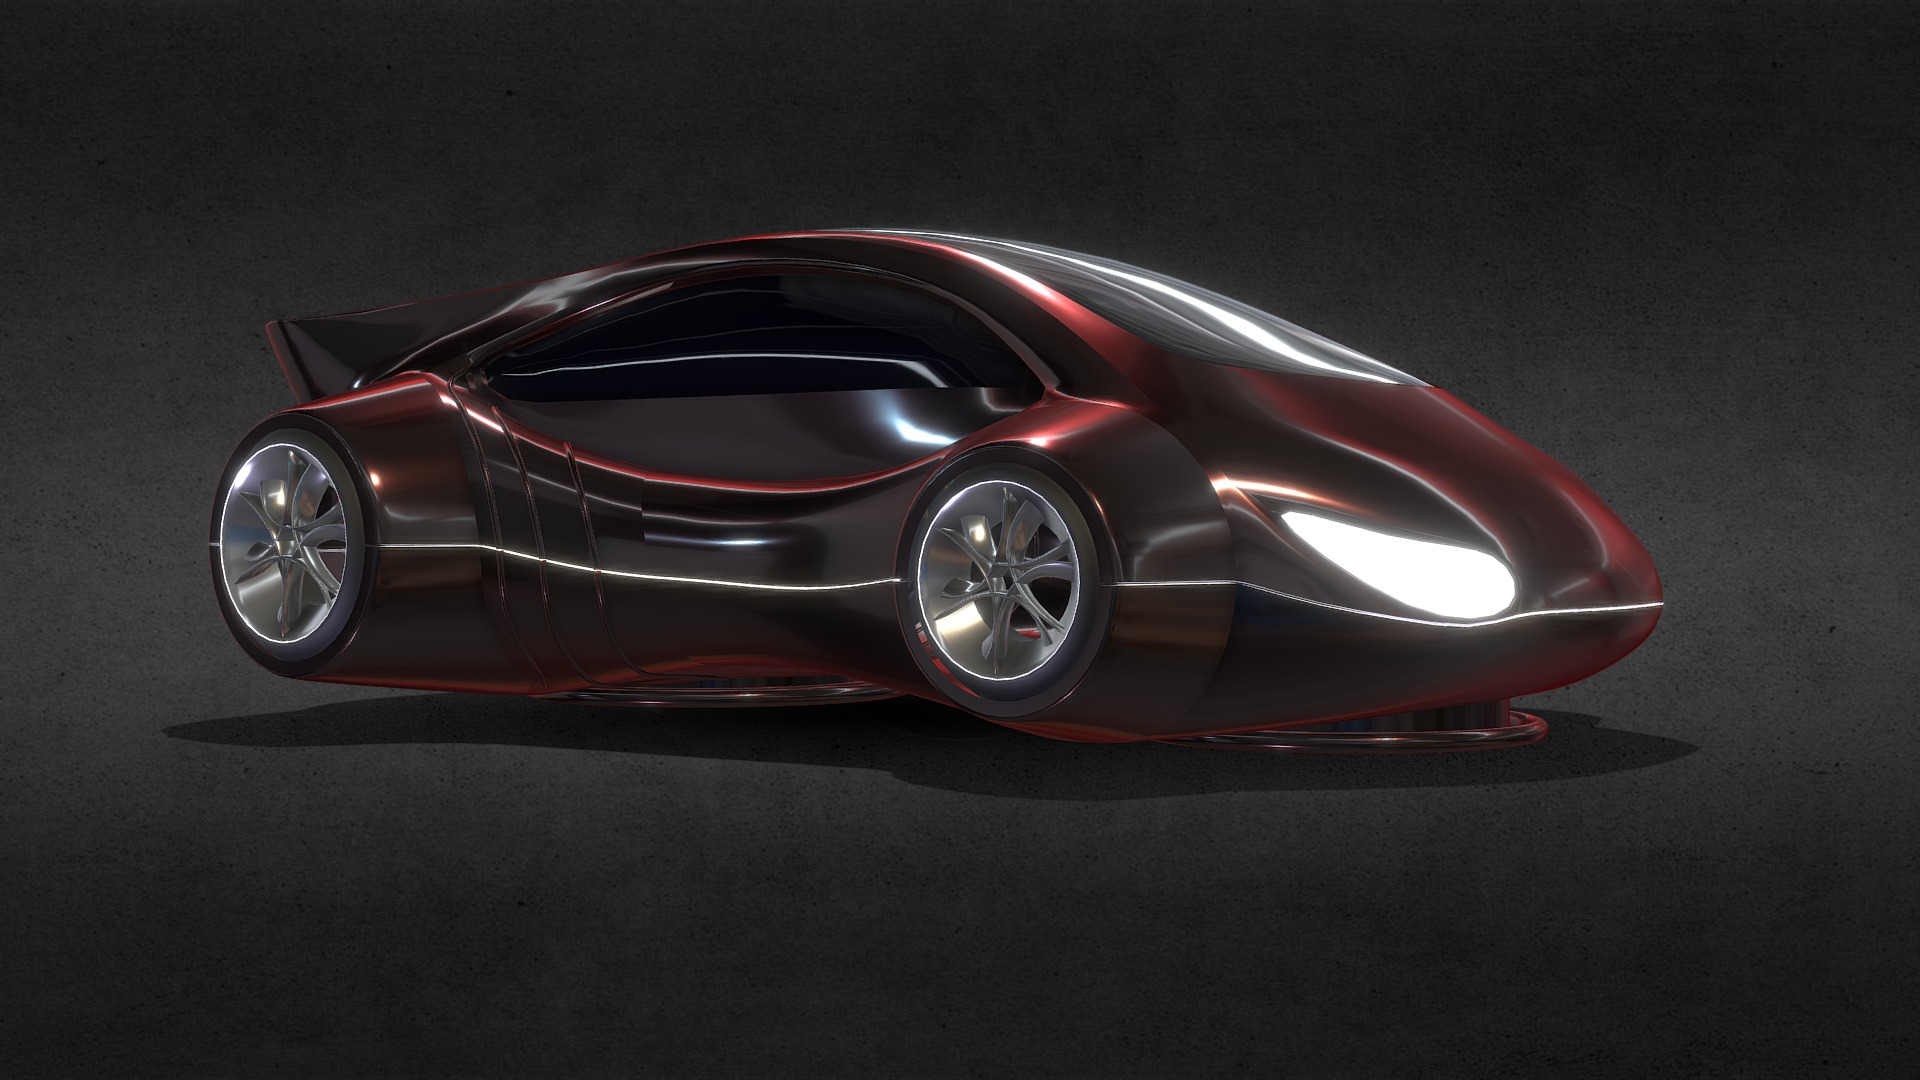 3D model Futuristic Car 1 - This is a 3D model of the Futuristic Car 1. The 3D model is about a red sports car.